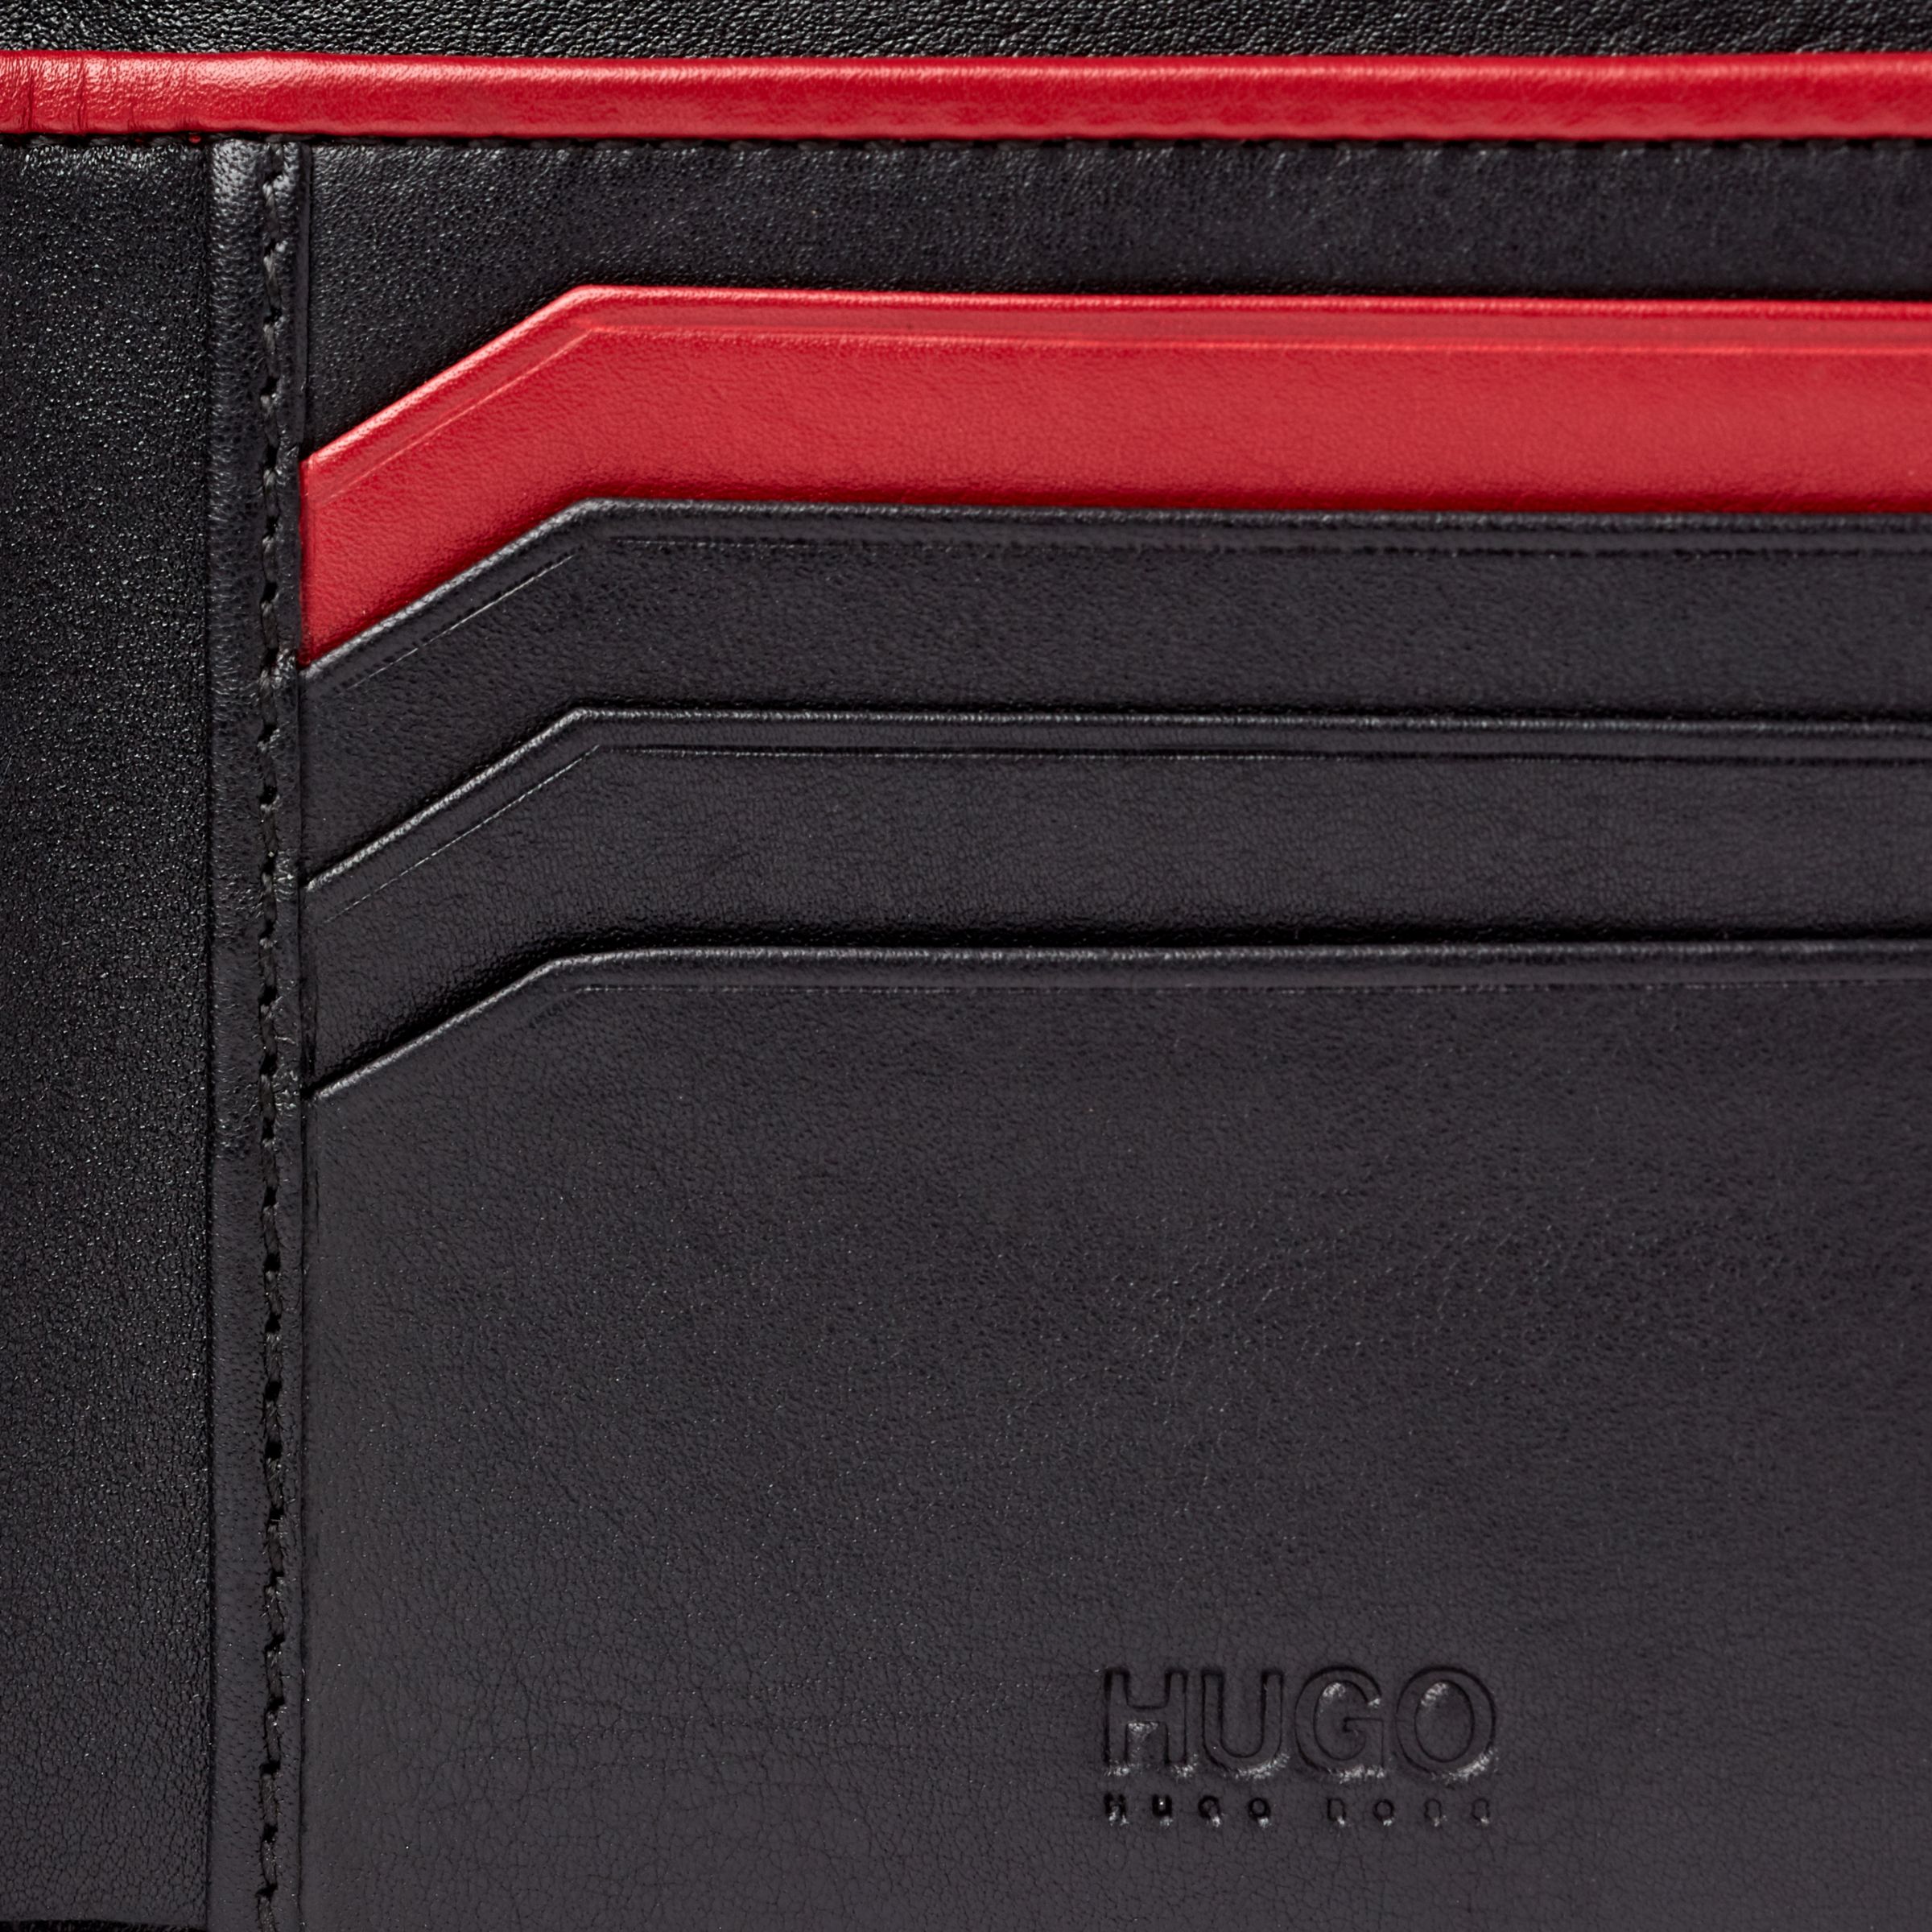 hugo boss wallets